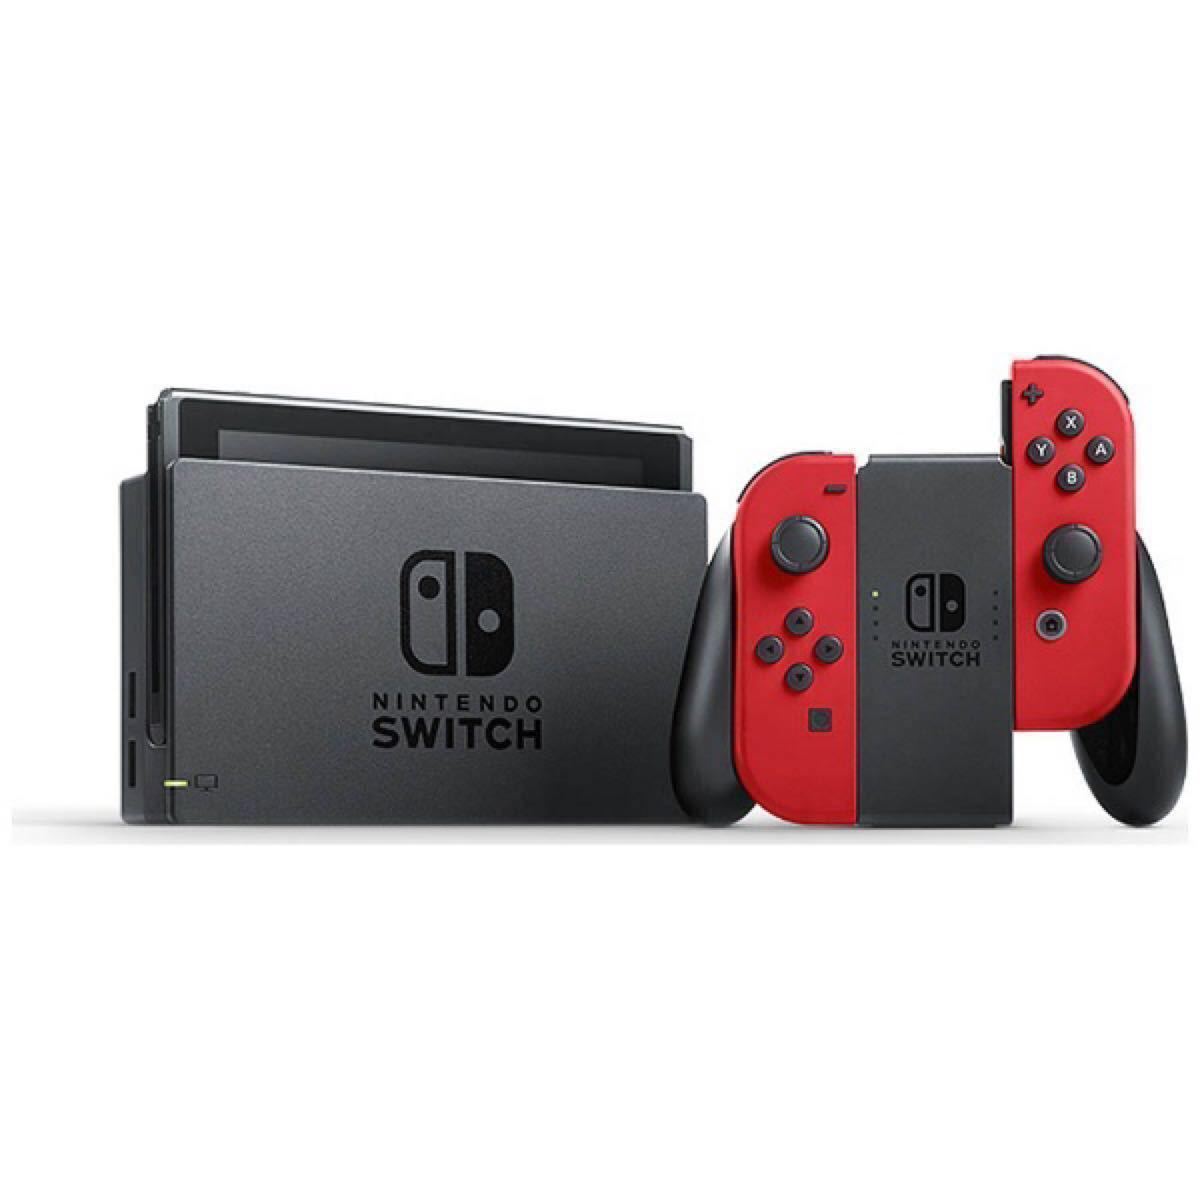 Nintendo Switch スーパーマリオ オデッセイセット 任天堂 ゲーム機本体 ソフト付き